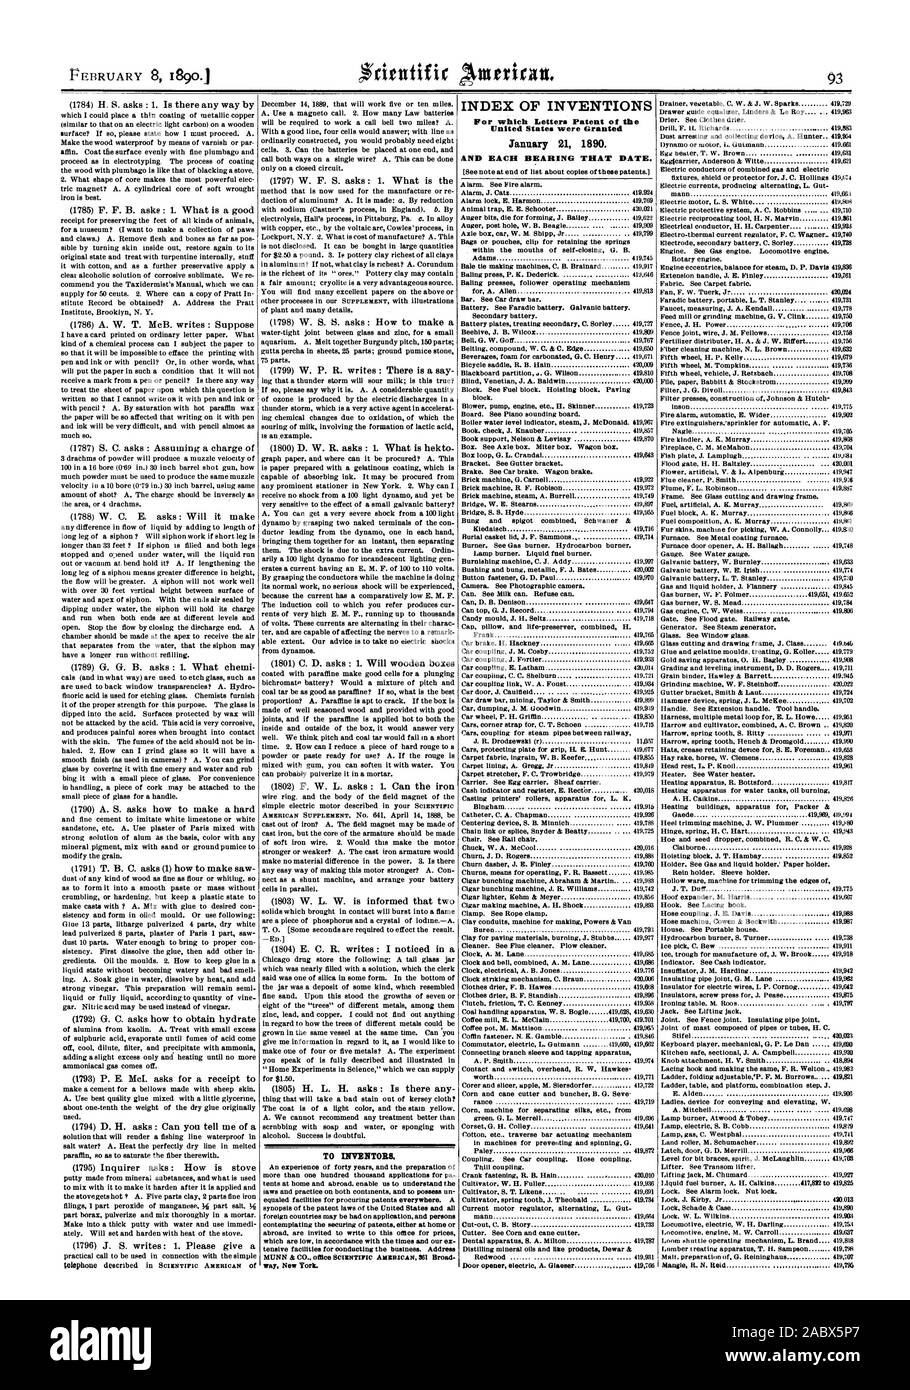 A los inventores. Índice de las invenciones para cuya patente de letras de los Estados Unidos fueron otorgadas el 21 de enero de 1890., Scientific American, 1890-02-08 Foto de stock